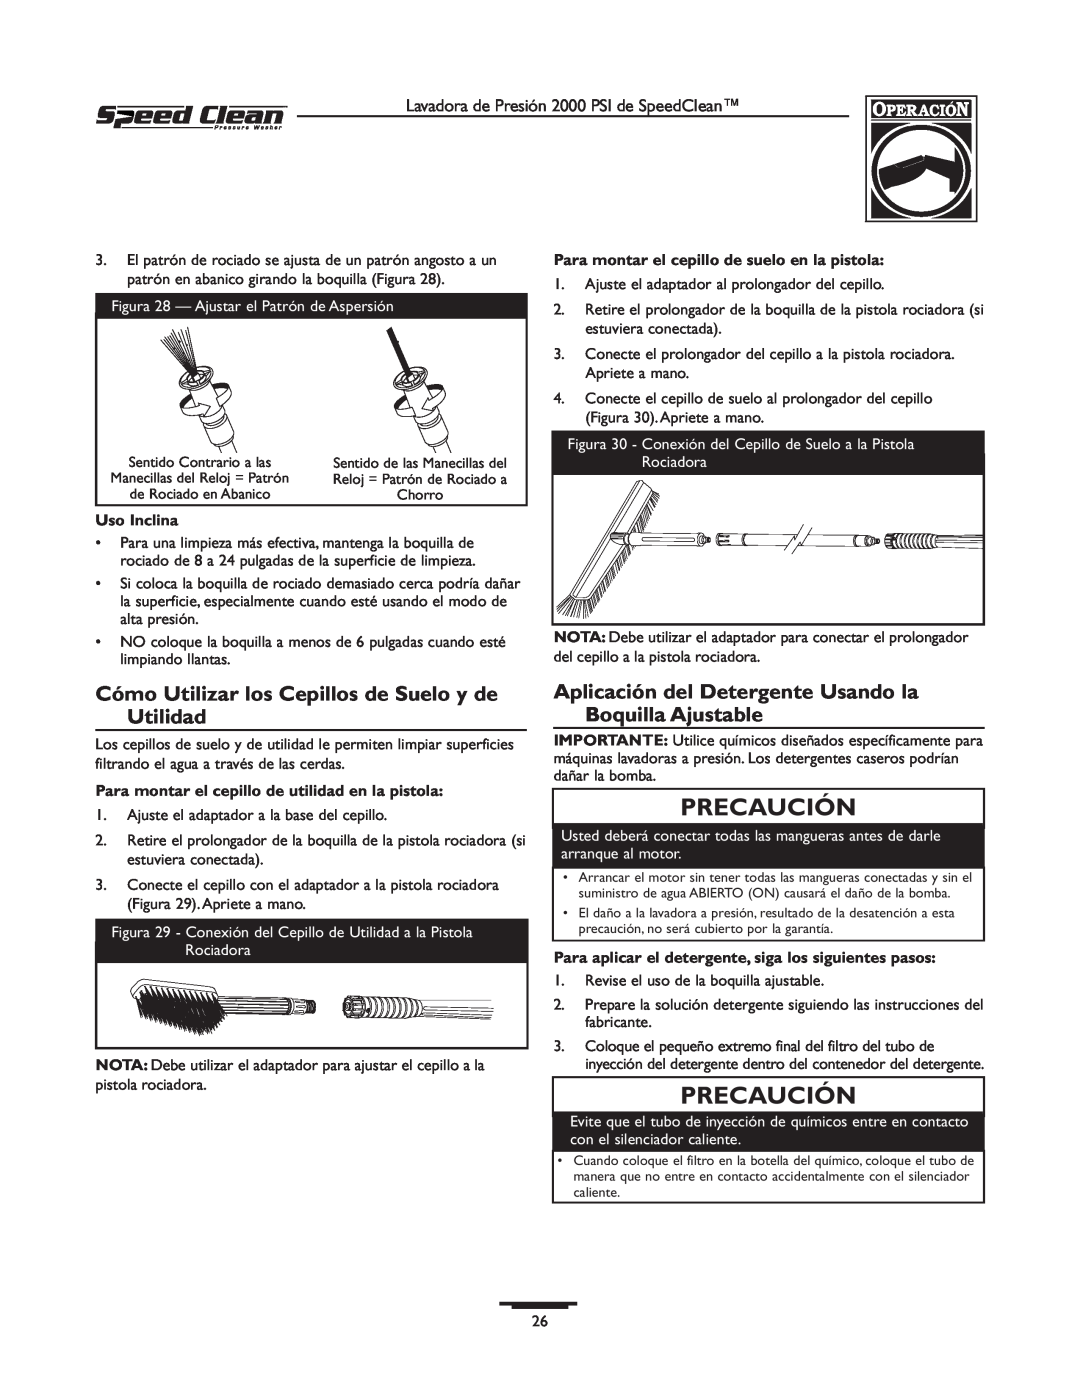 Briggs & Stratton 020239-0 owner manual Cómo Utilizar los Cepillos de Suelo y de Utilidad, Precaución, Uso Inclina 